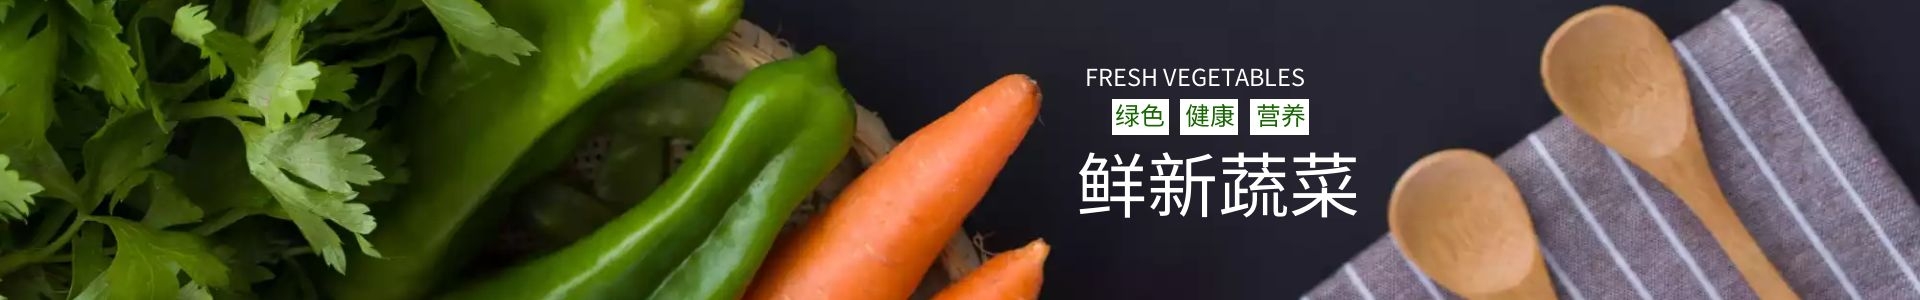 蔬菜种植-广州碧溪有机农业有限公司